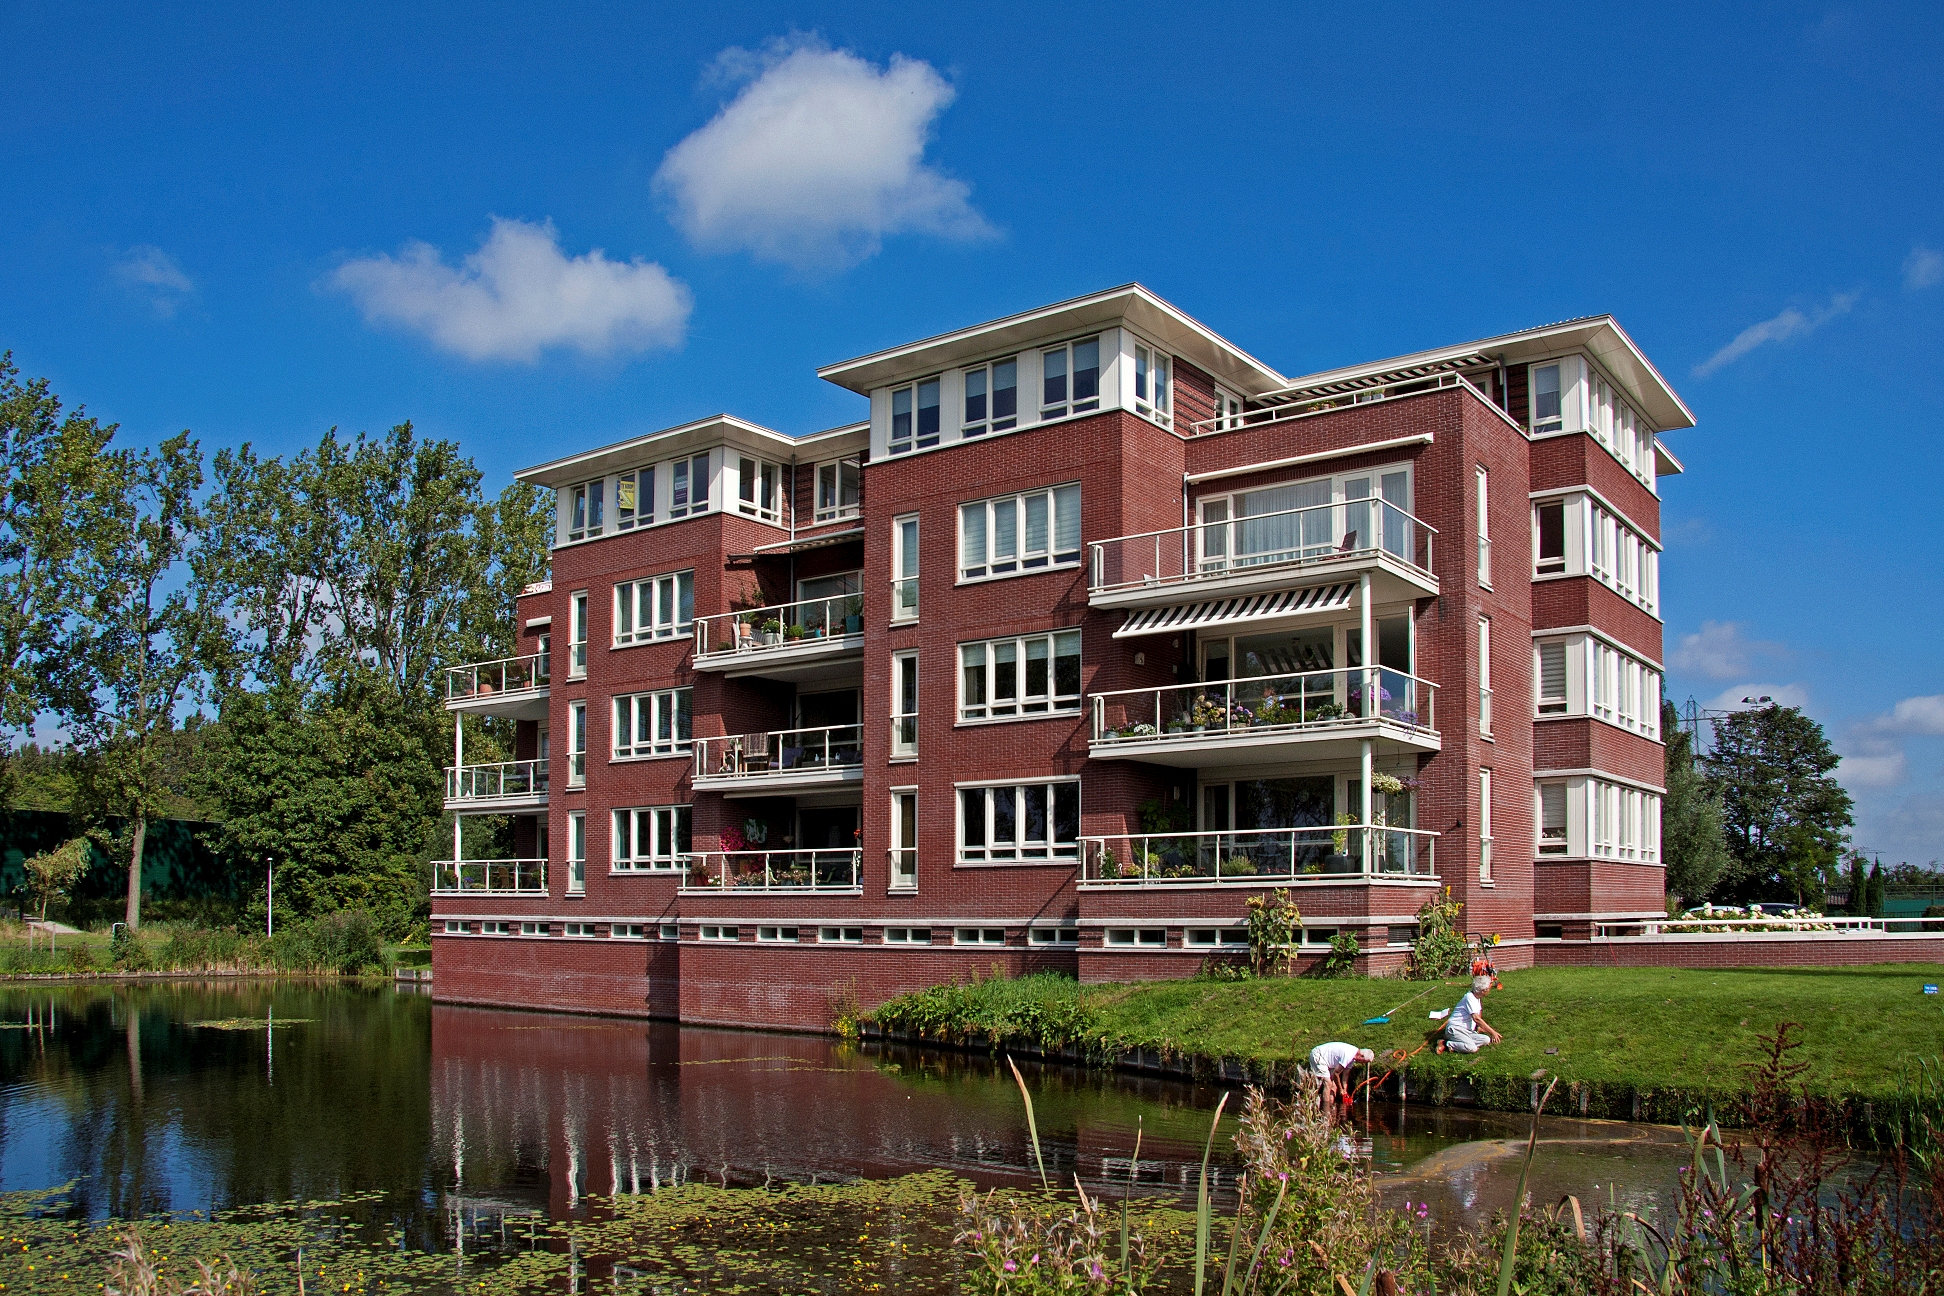 72 luxe huurappartementen aan het Voorsche Park in Voorschoten